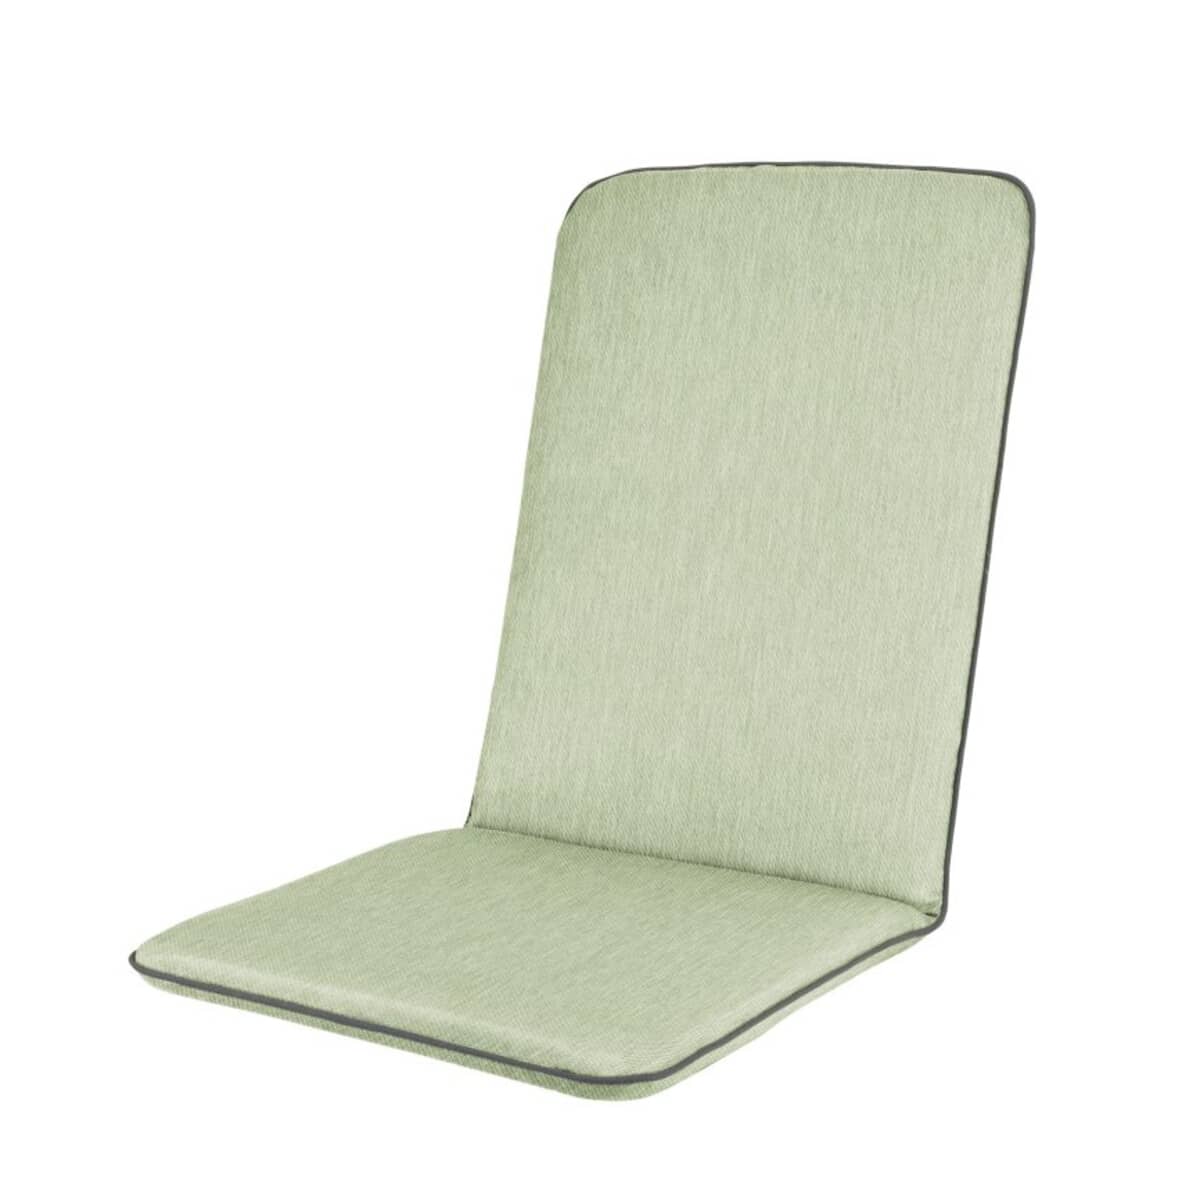 Kettler Novero Recliner Chair Cushion - Sage